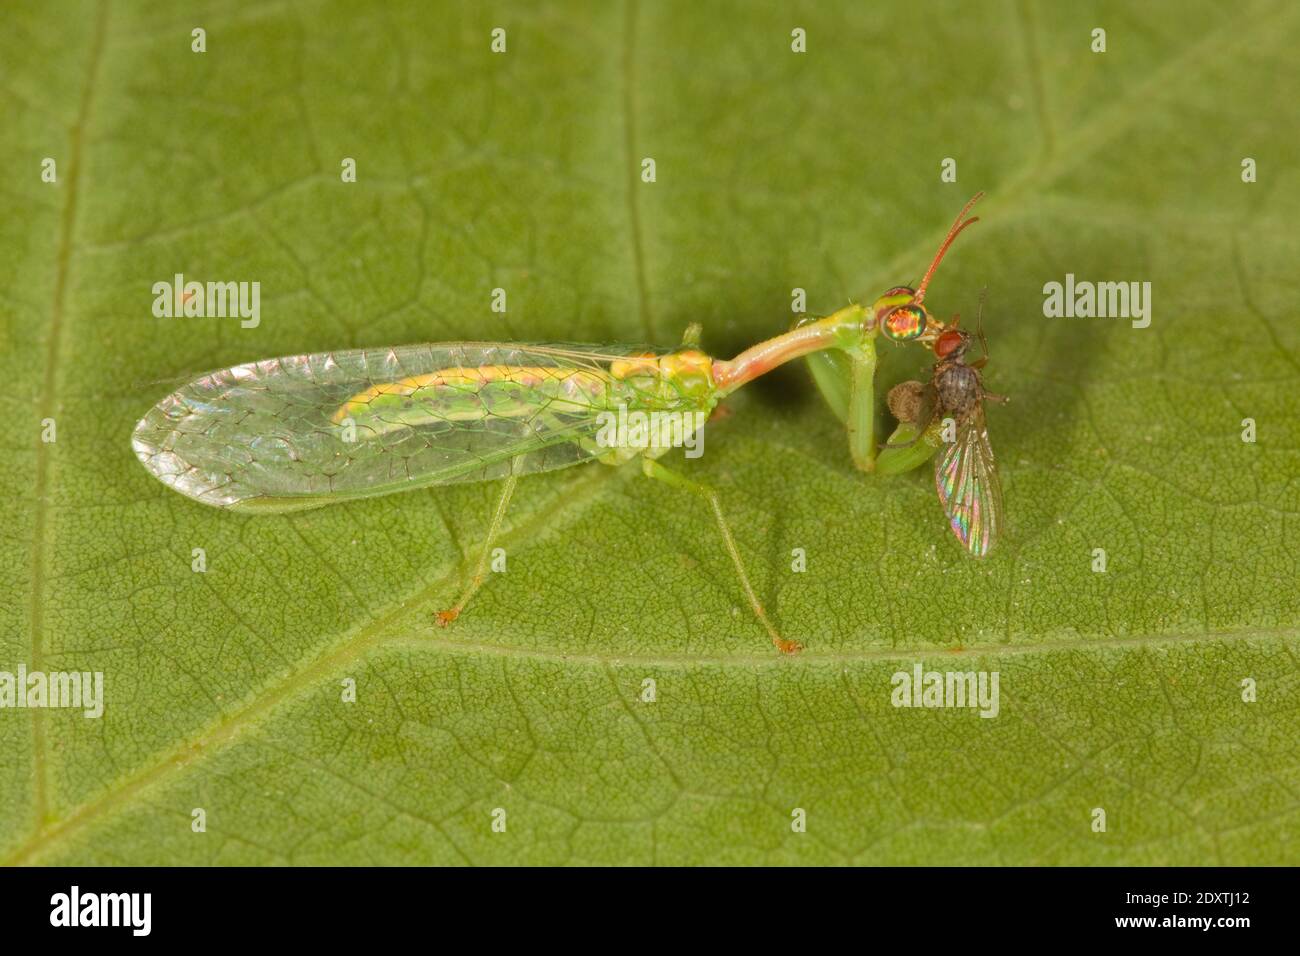 Green Mantisfly, Zeugomantispa minuta, Mantispidae. Body Length 15 mm. Feeding on fly. Stock Photo